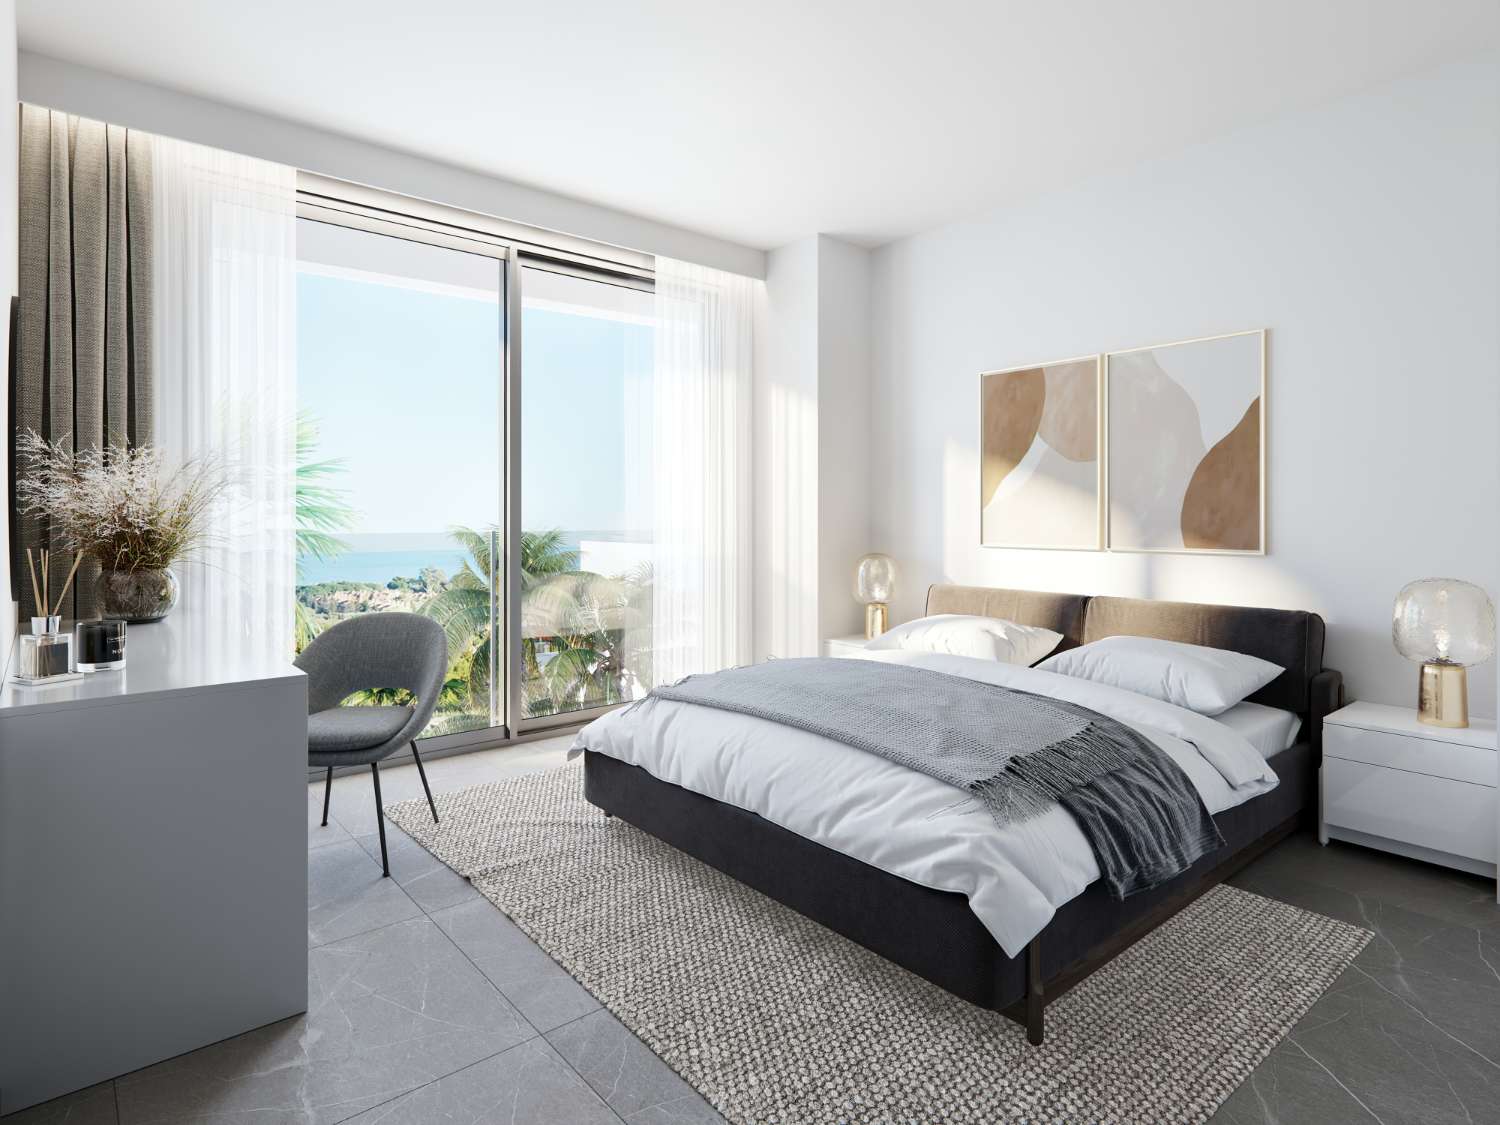 Lussuoso appartamento a Marbella, piano terra con giardino privato in urbanizzazione sulla prima linea del campo da golf